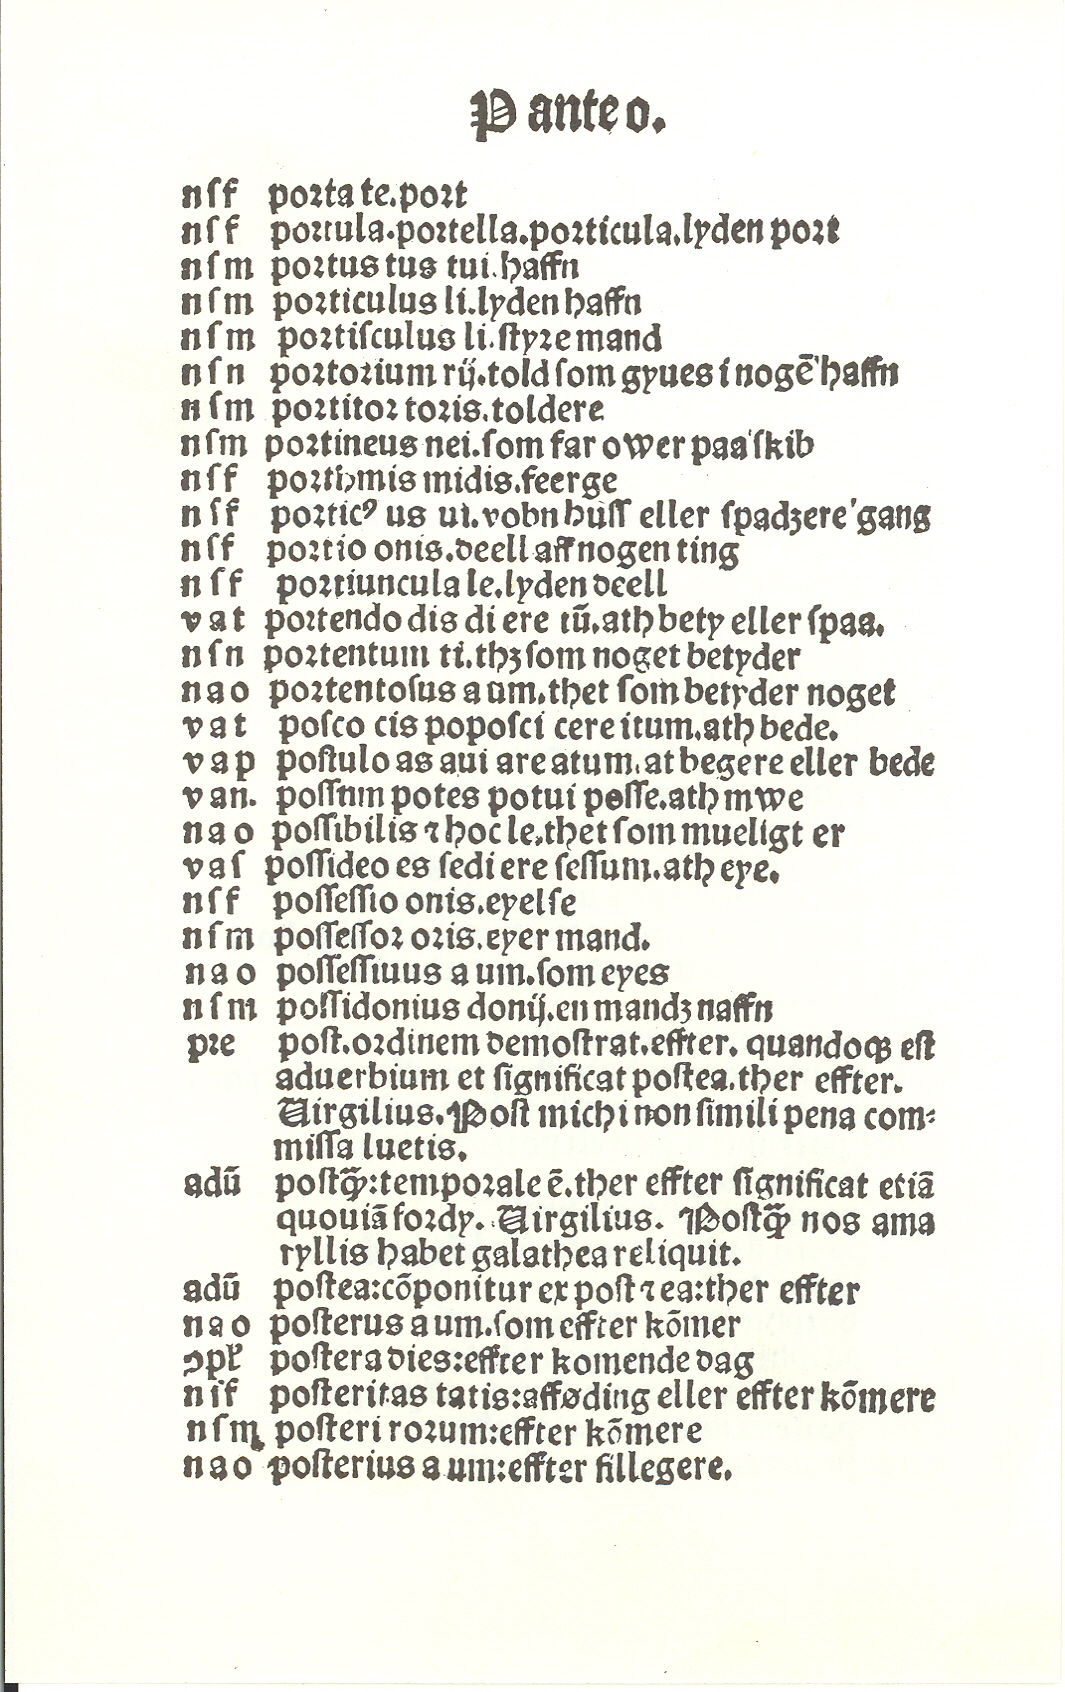 Pedersen 1510, Side: 286